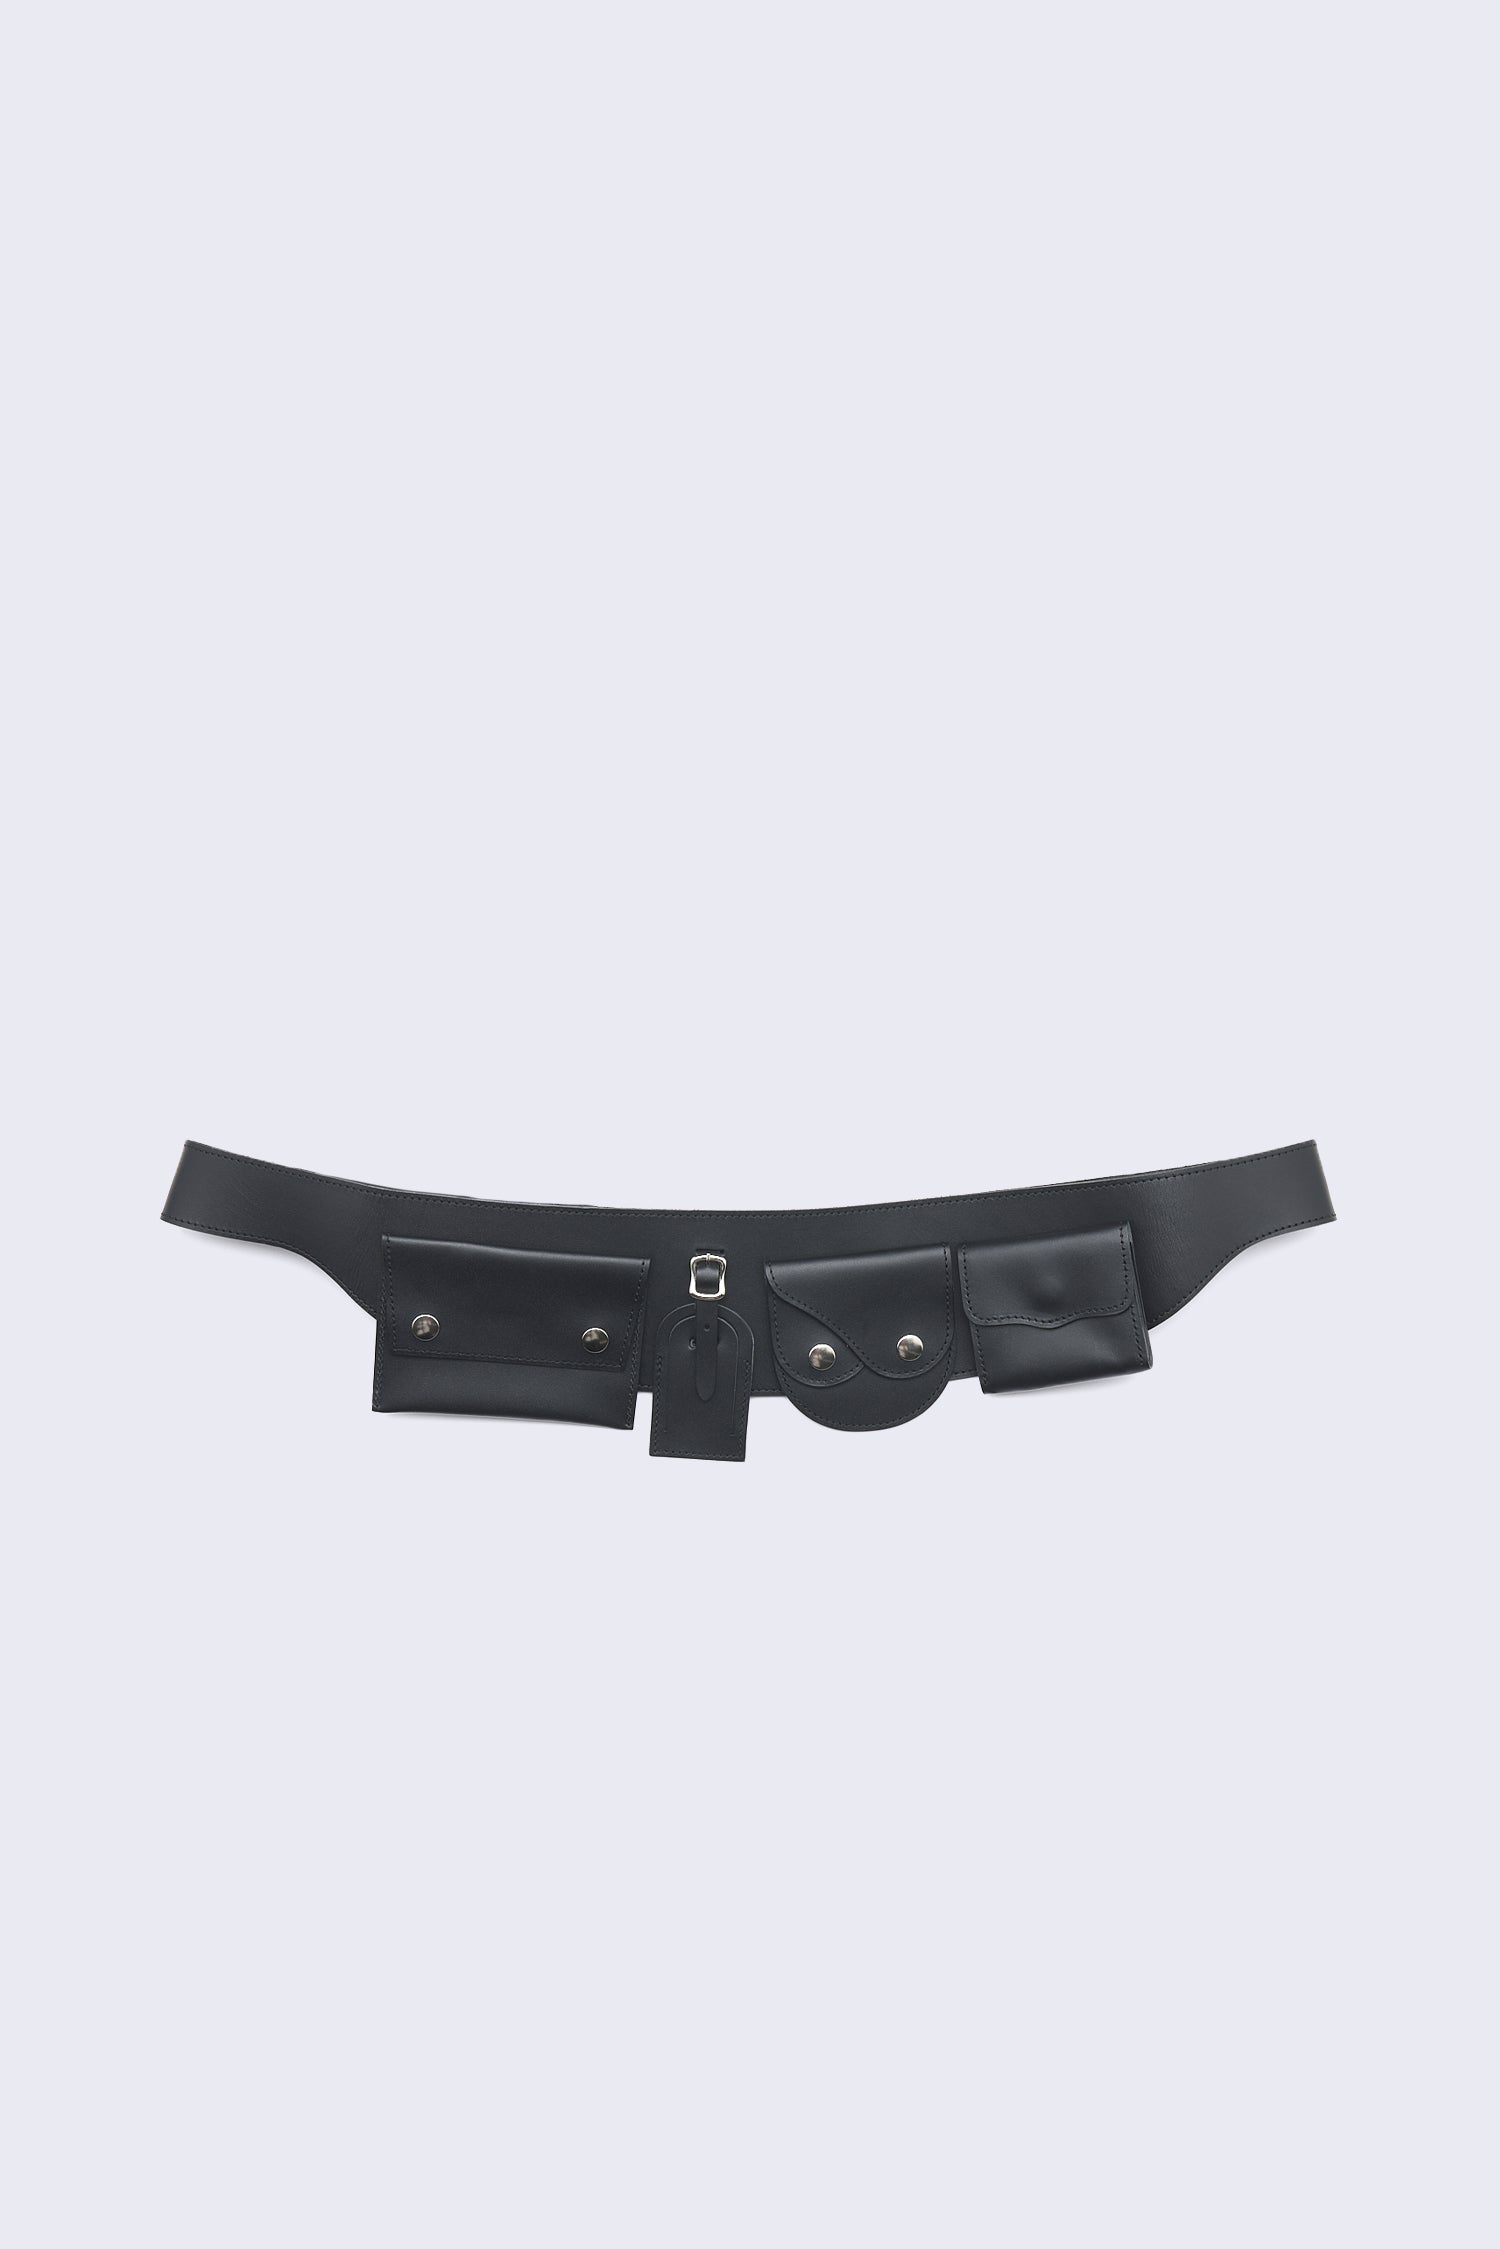 FL-K301 M Belt